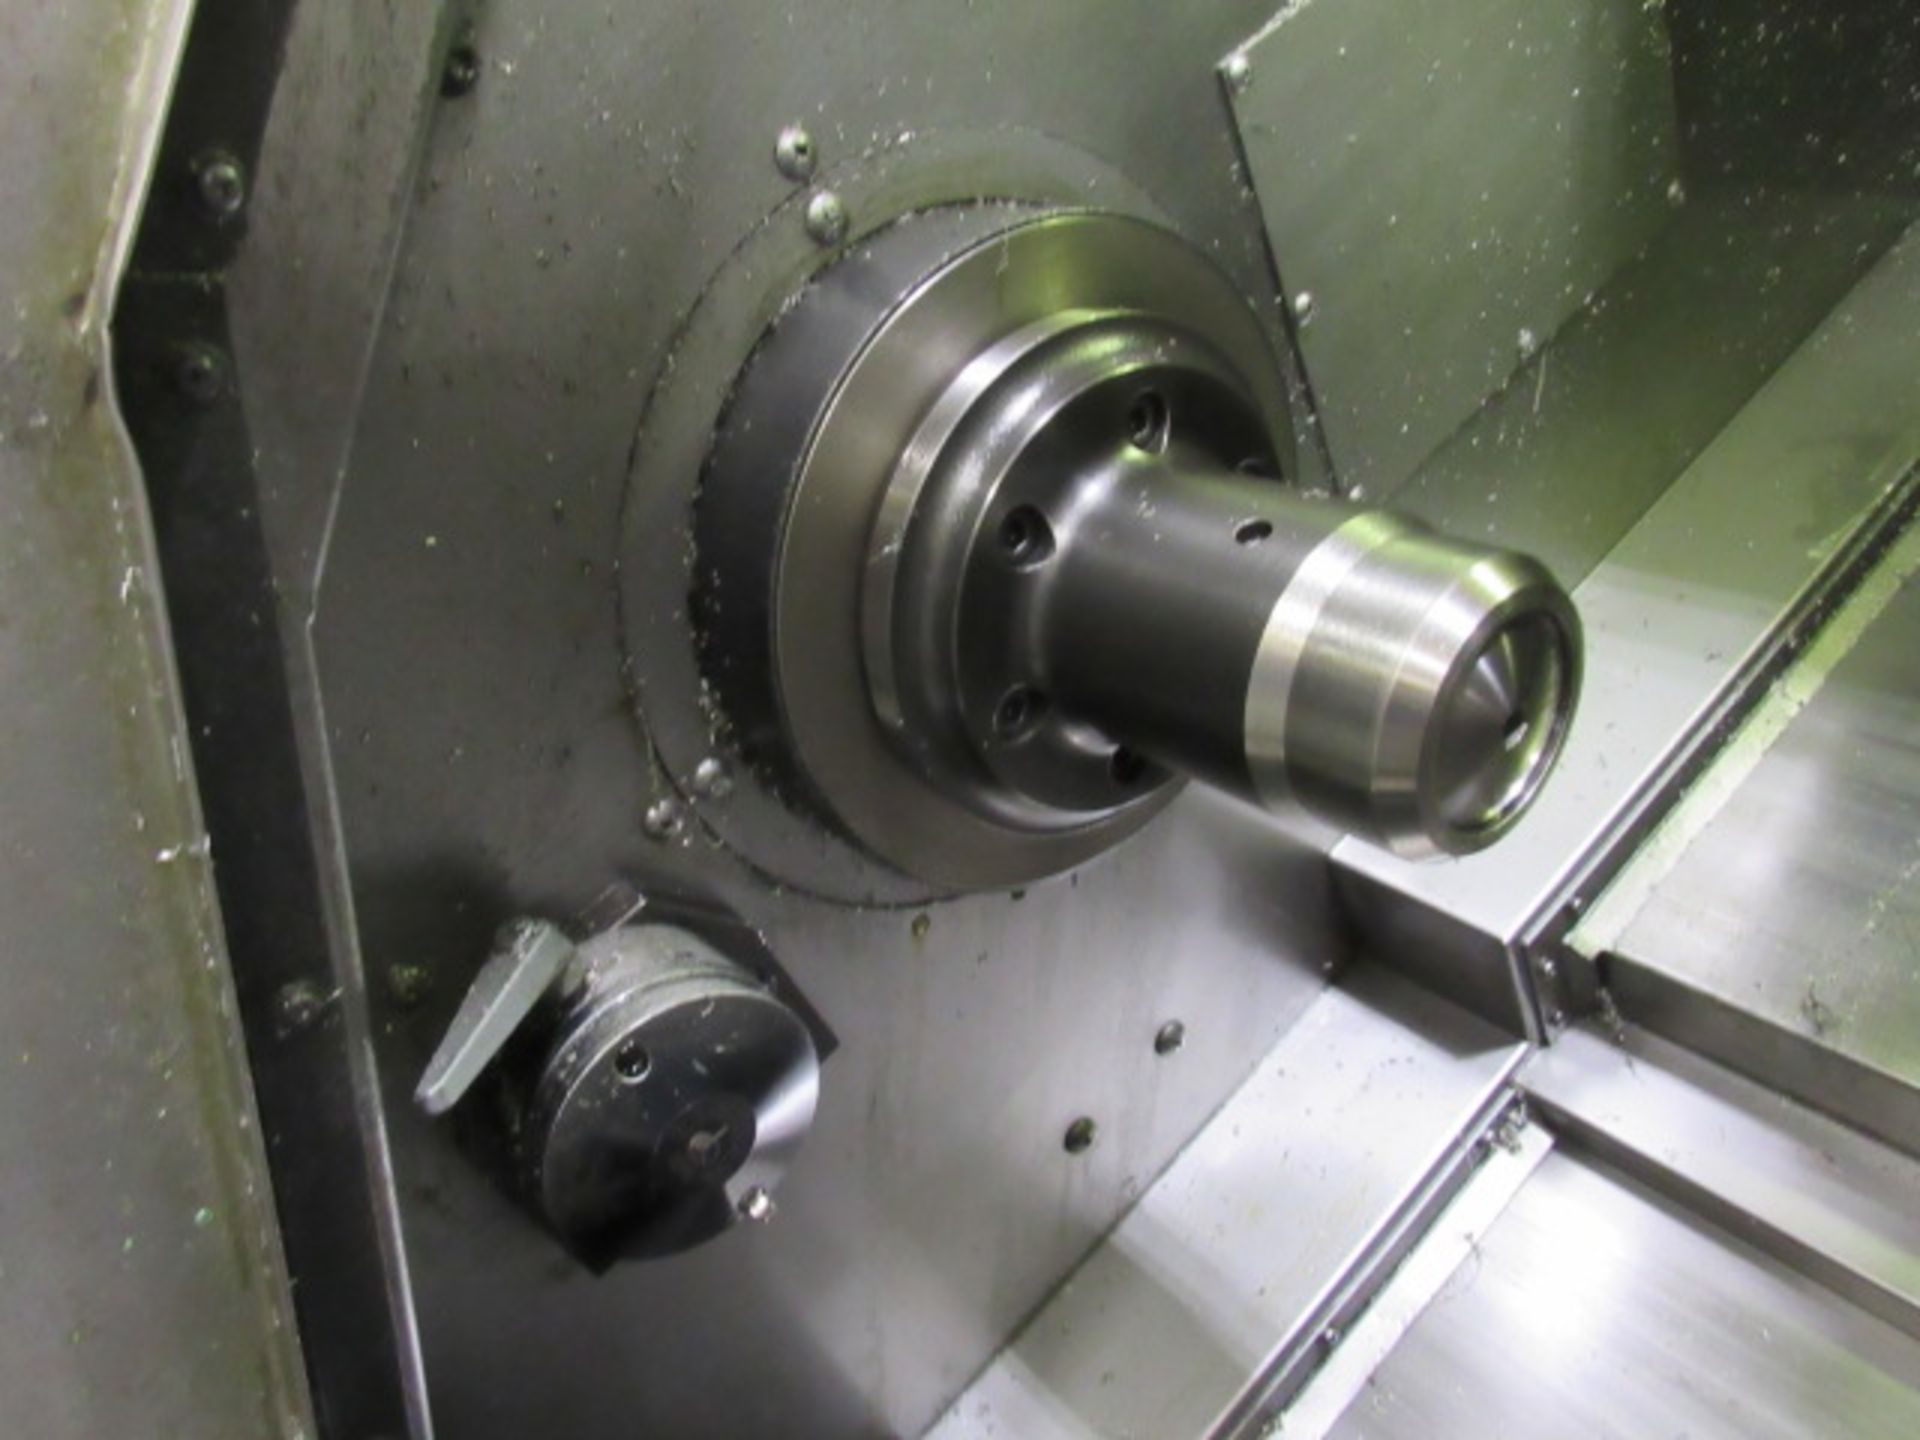 Mori Seiki SL-150S Dual Spindle CNC Turning Center - Image 7 of 9